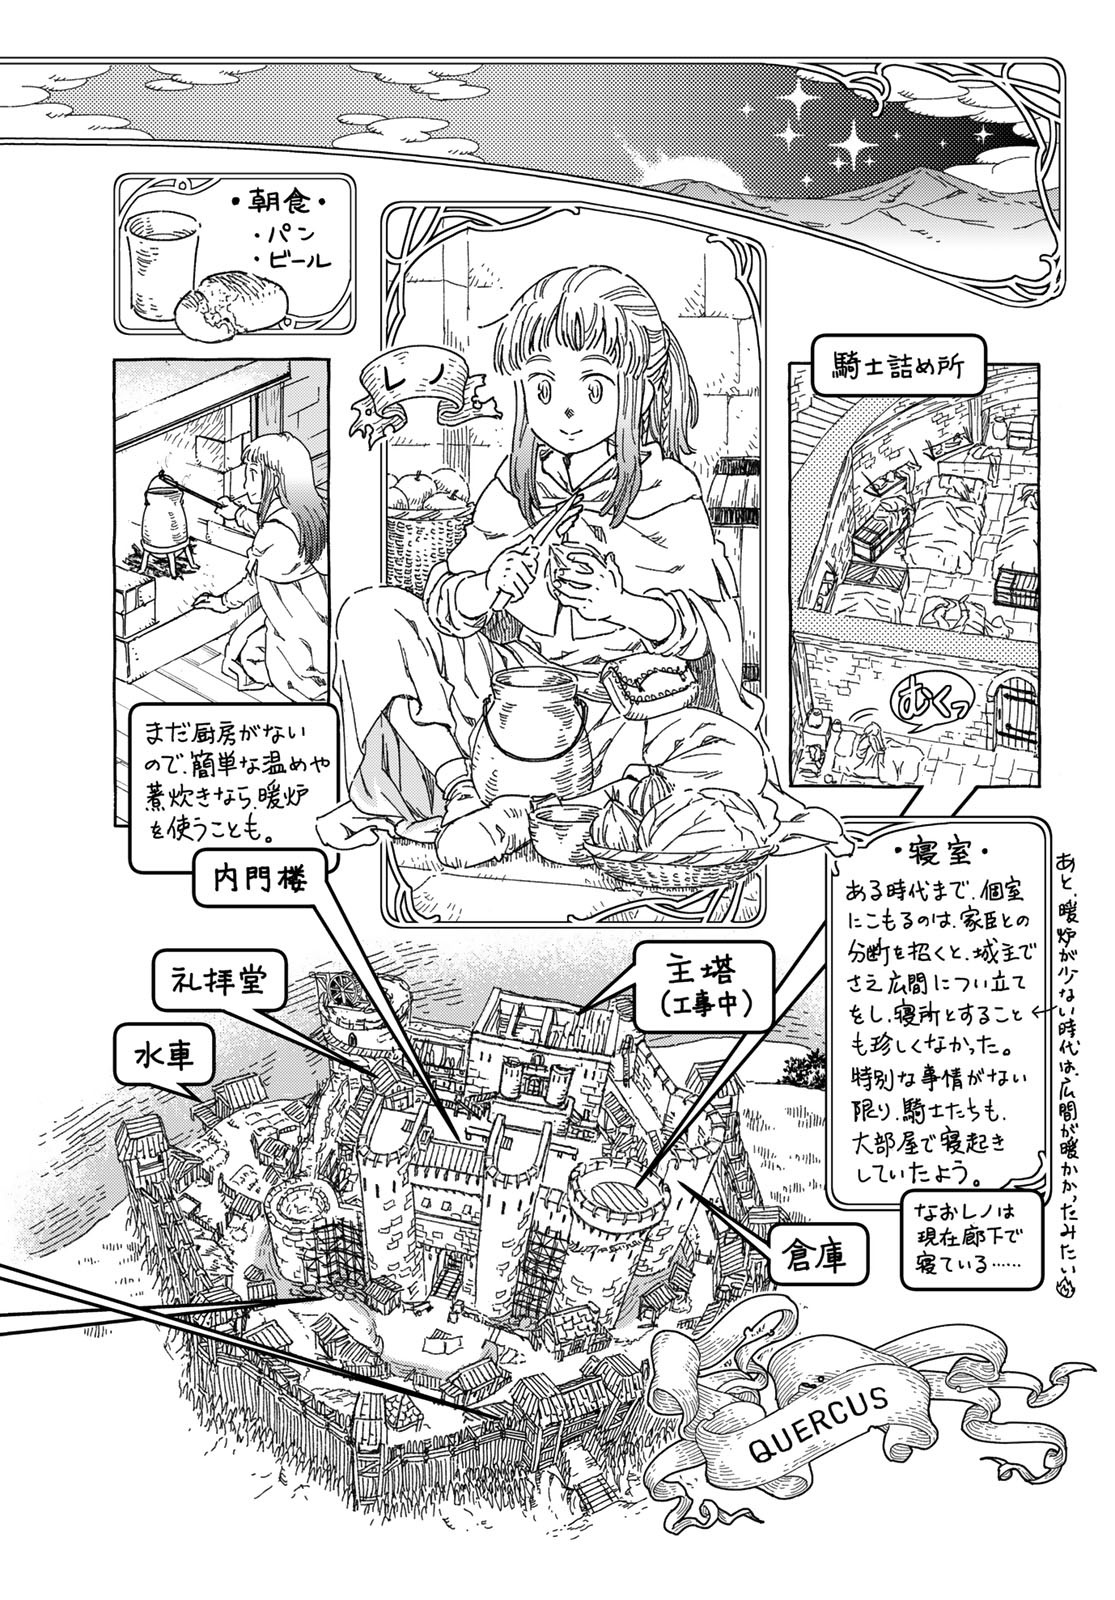 Mugou no Schnell Gear: Chikyuugai Kisouka AI - Chapter 49 - Page 2